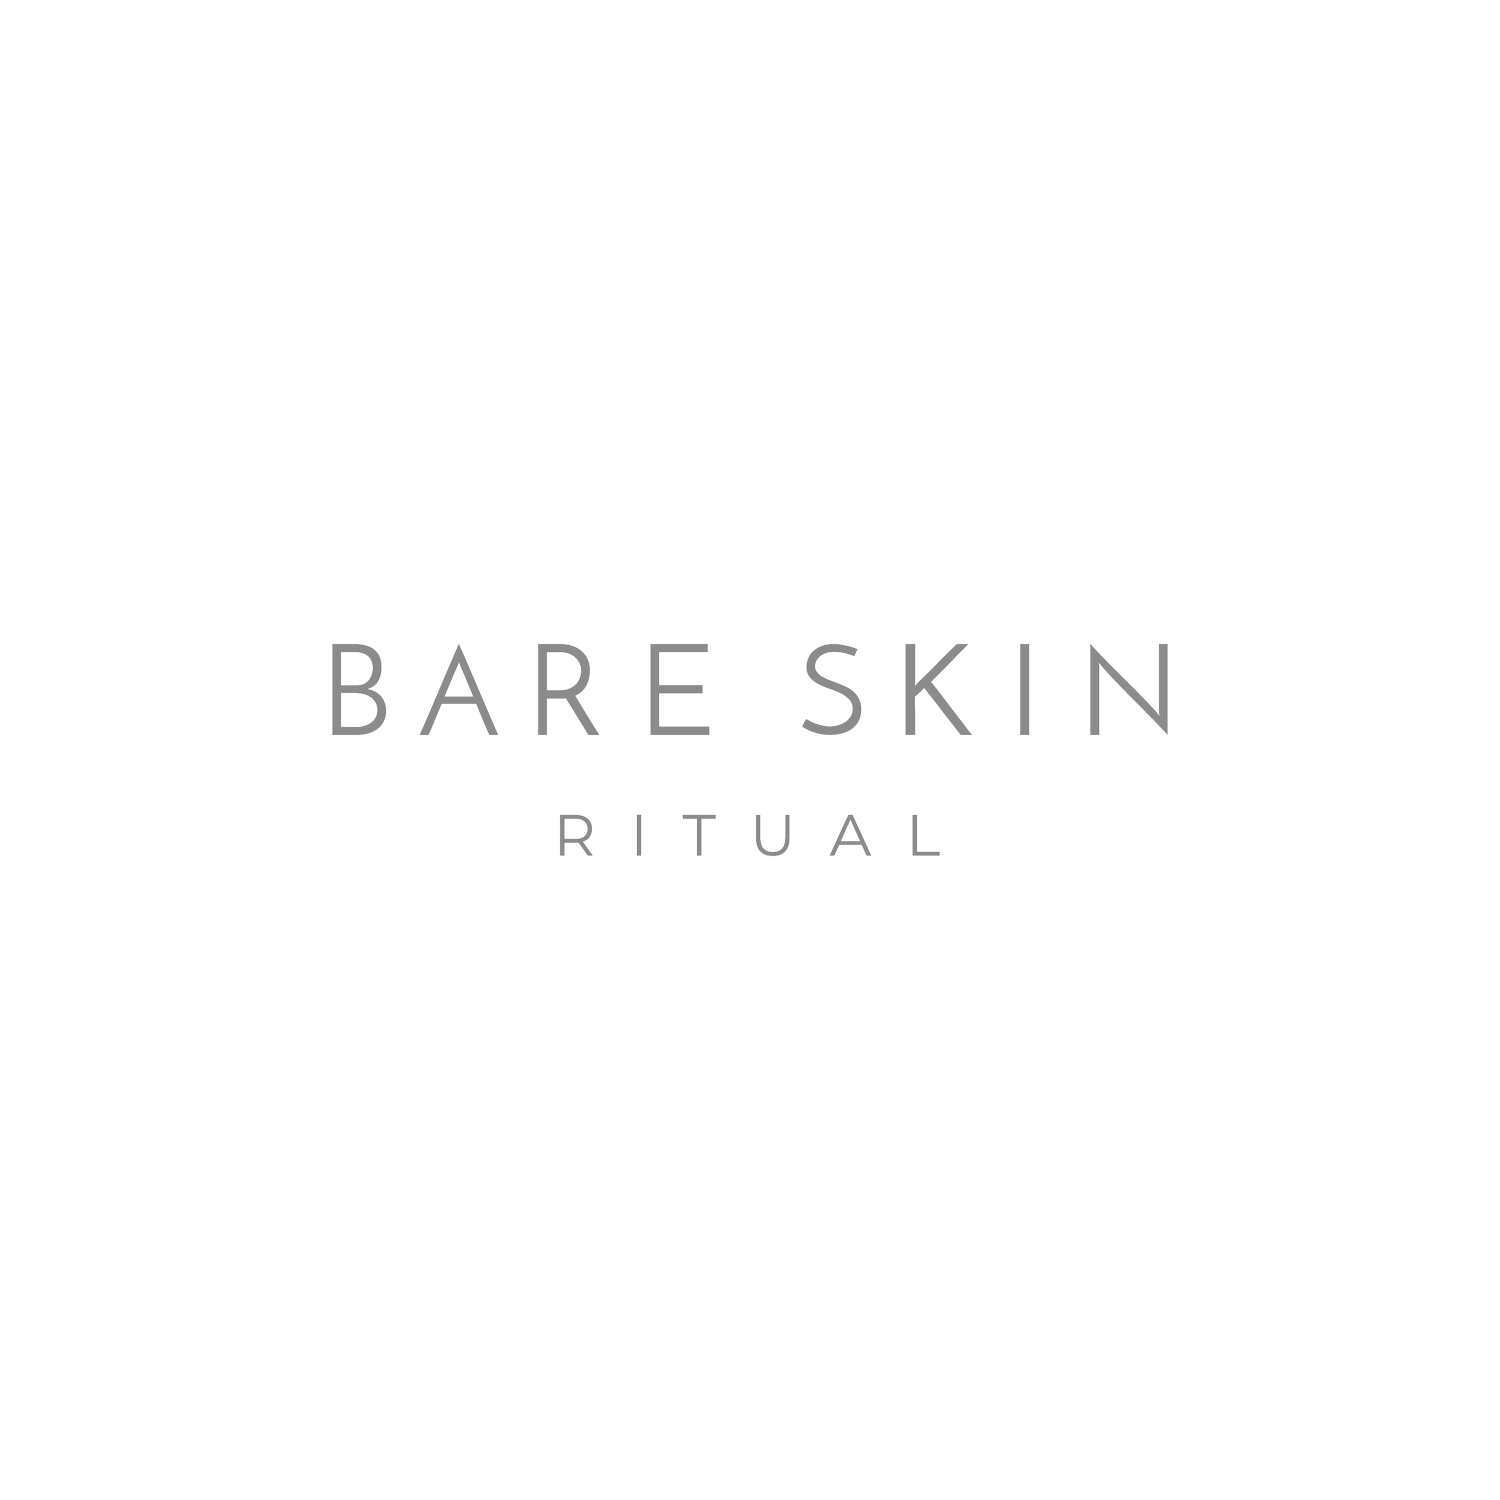 Bare Skin Rituals - Facials and Skin Care - Detroit, MI